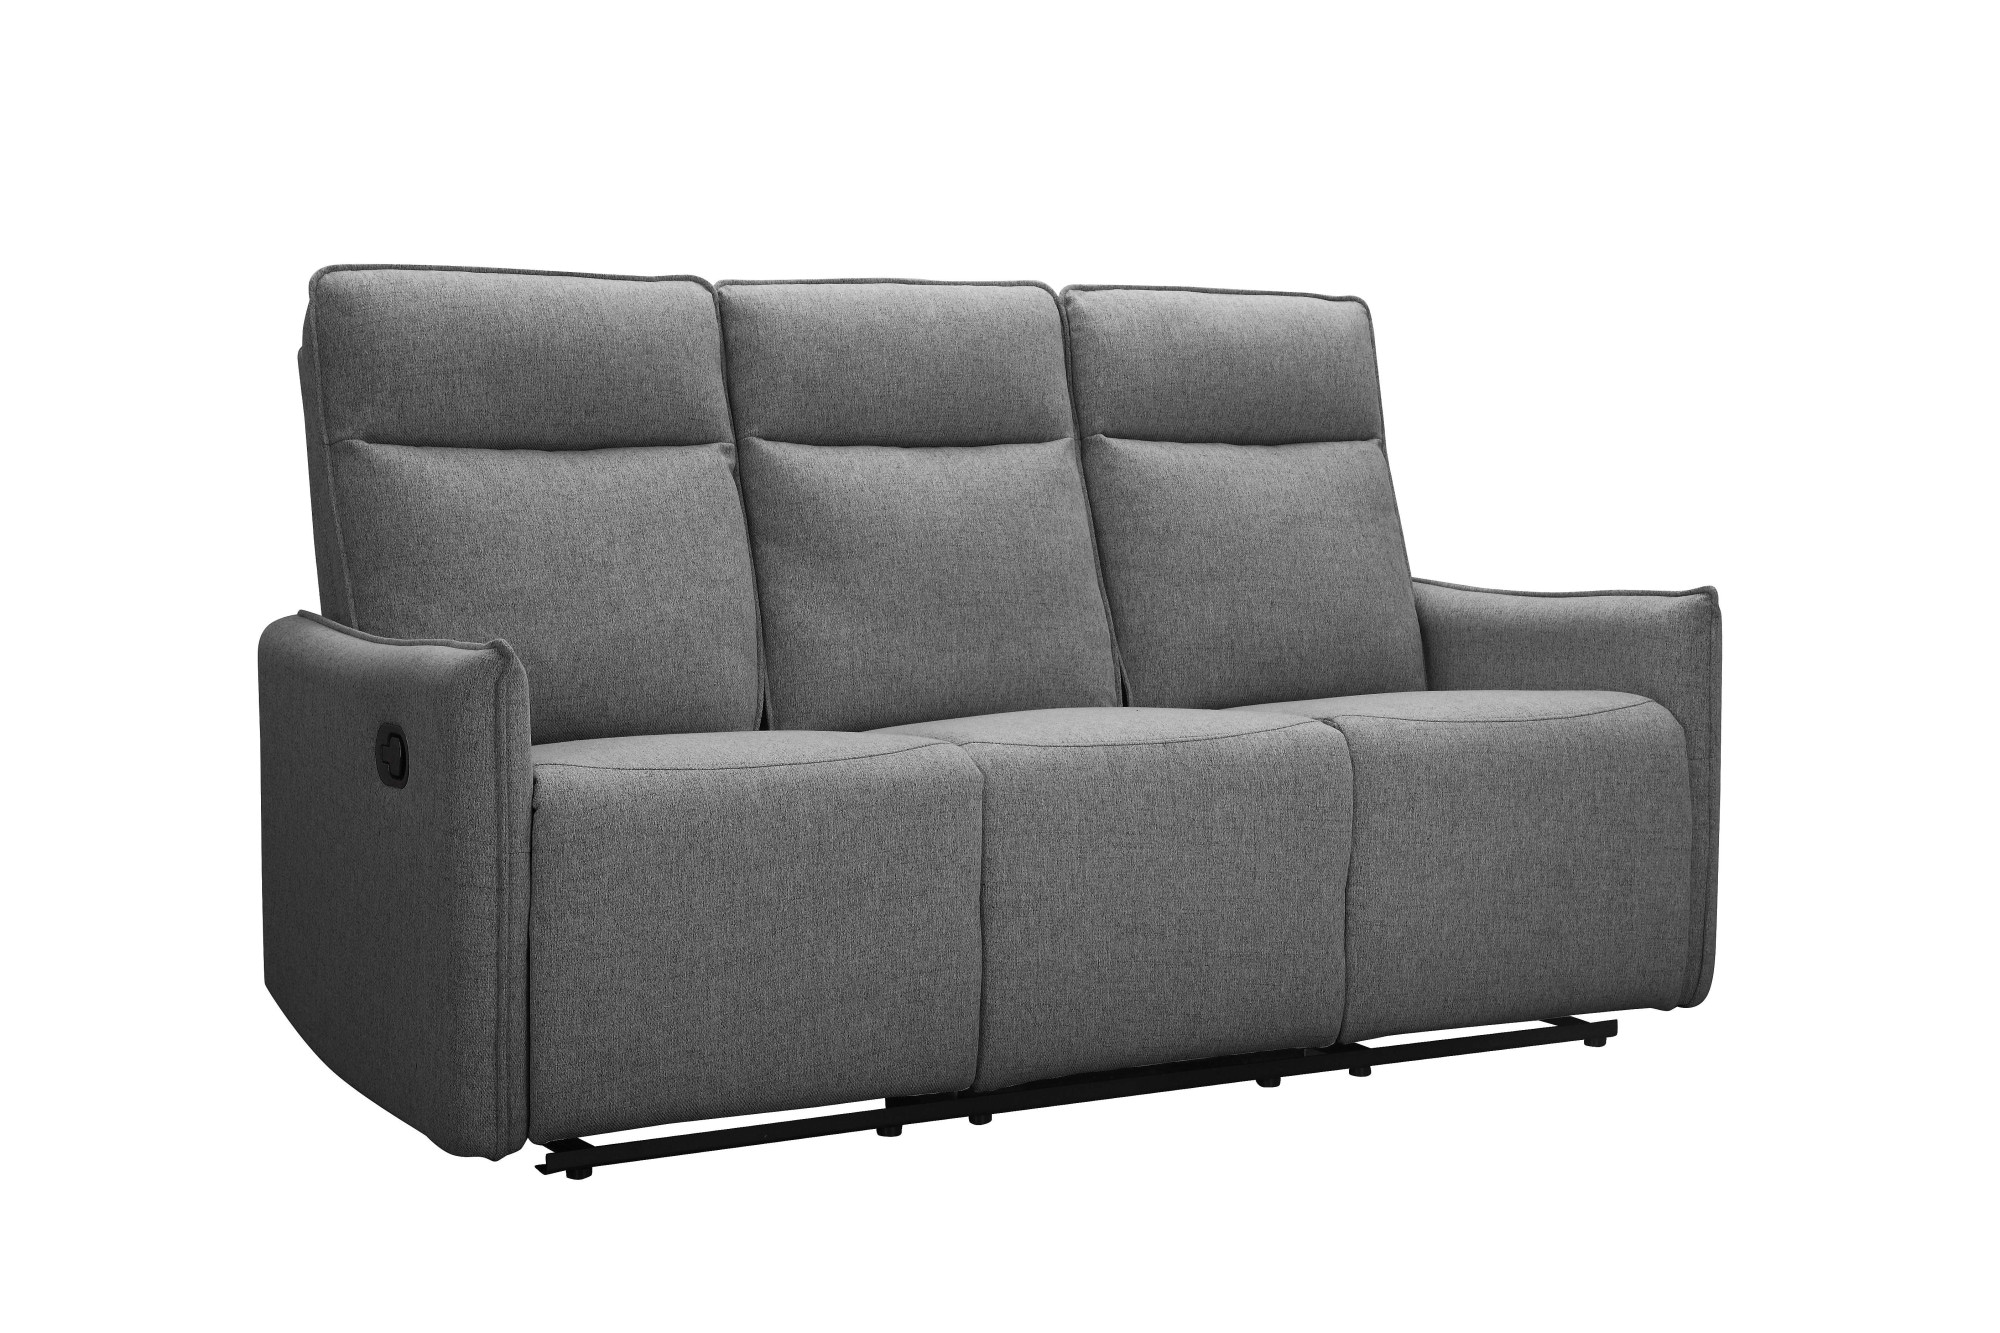 Dorel Home 3-Sitzer »Lugo, Kinosofa mit Reclinerfunktion in Kunstleder und Webstoff«, mit manueller Relaxfunktion in 2 Sitzen